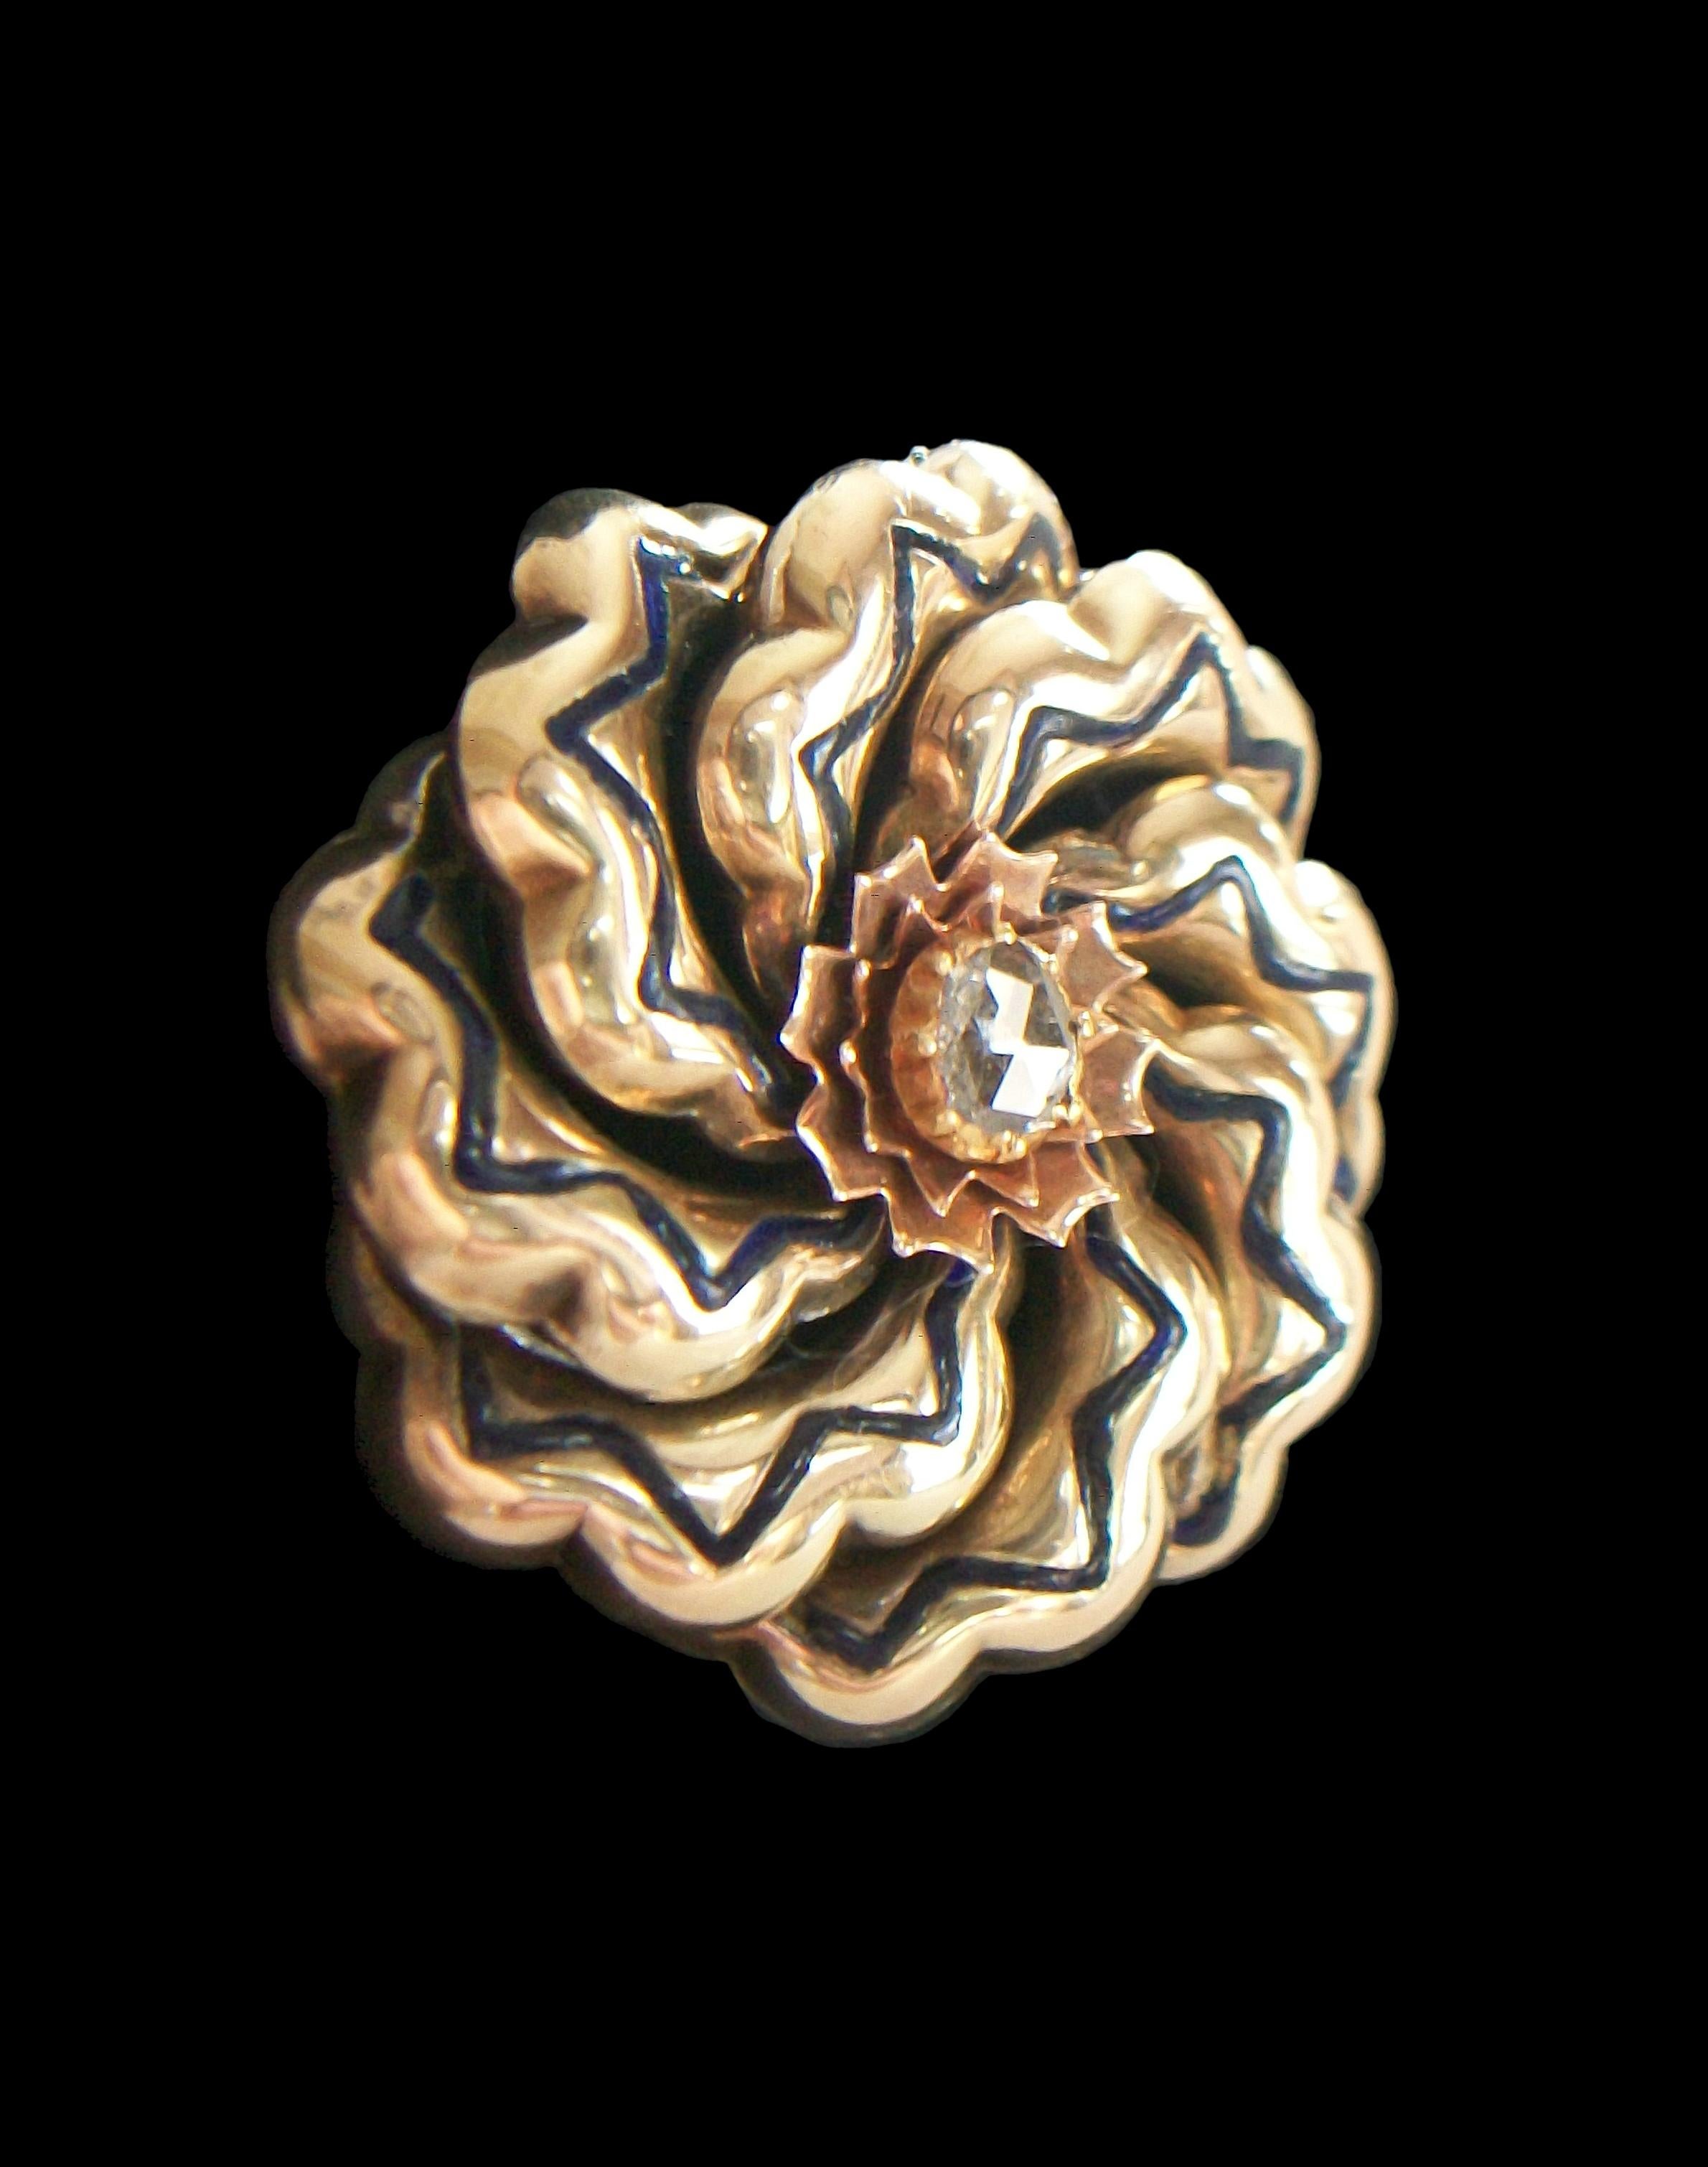 Antike viktorianische 14K Gelb- und Roségold mit Emaille, stilisierte florale Unendlichkeitsbrosche - mit Krallen besetzter Diamant im Rosenschliff in der Mitte (6 mm. x 5 mm. - ca.), umgeben von Roségold 